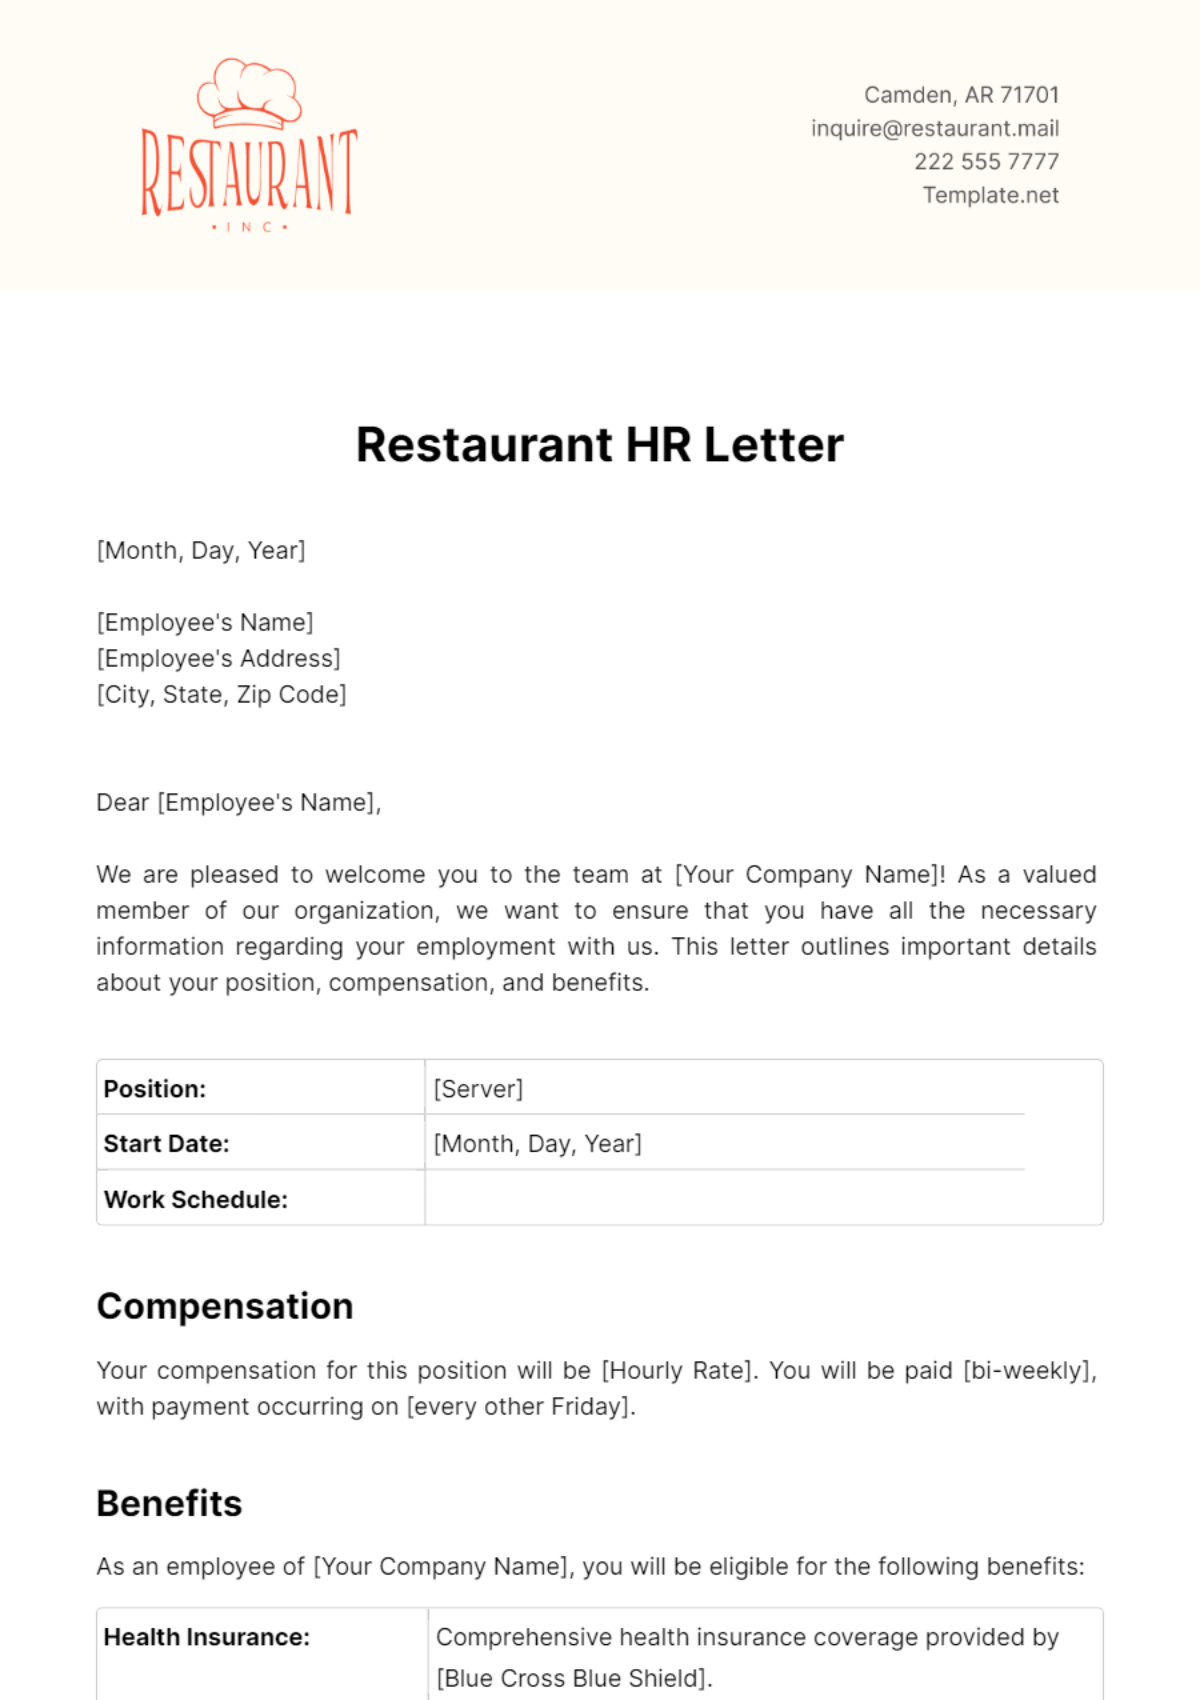 Restaurant HR Letter Template